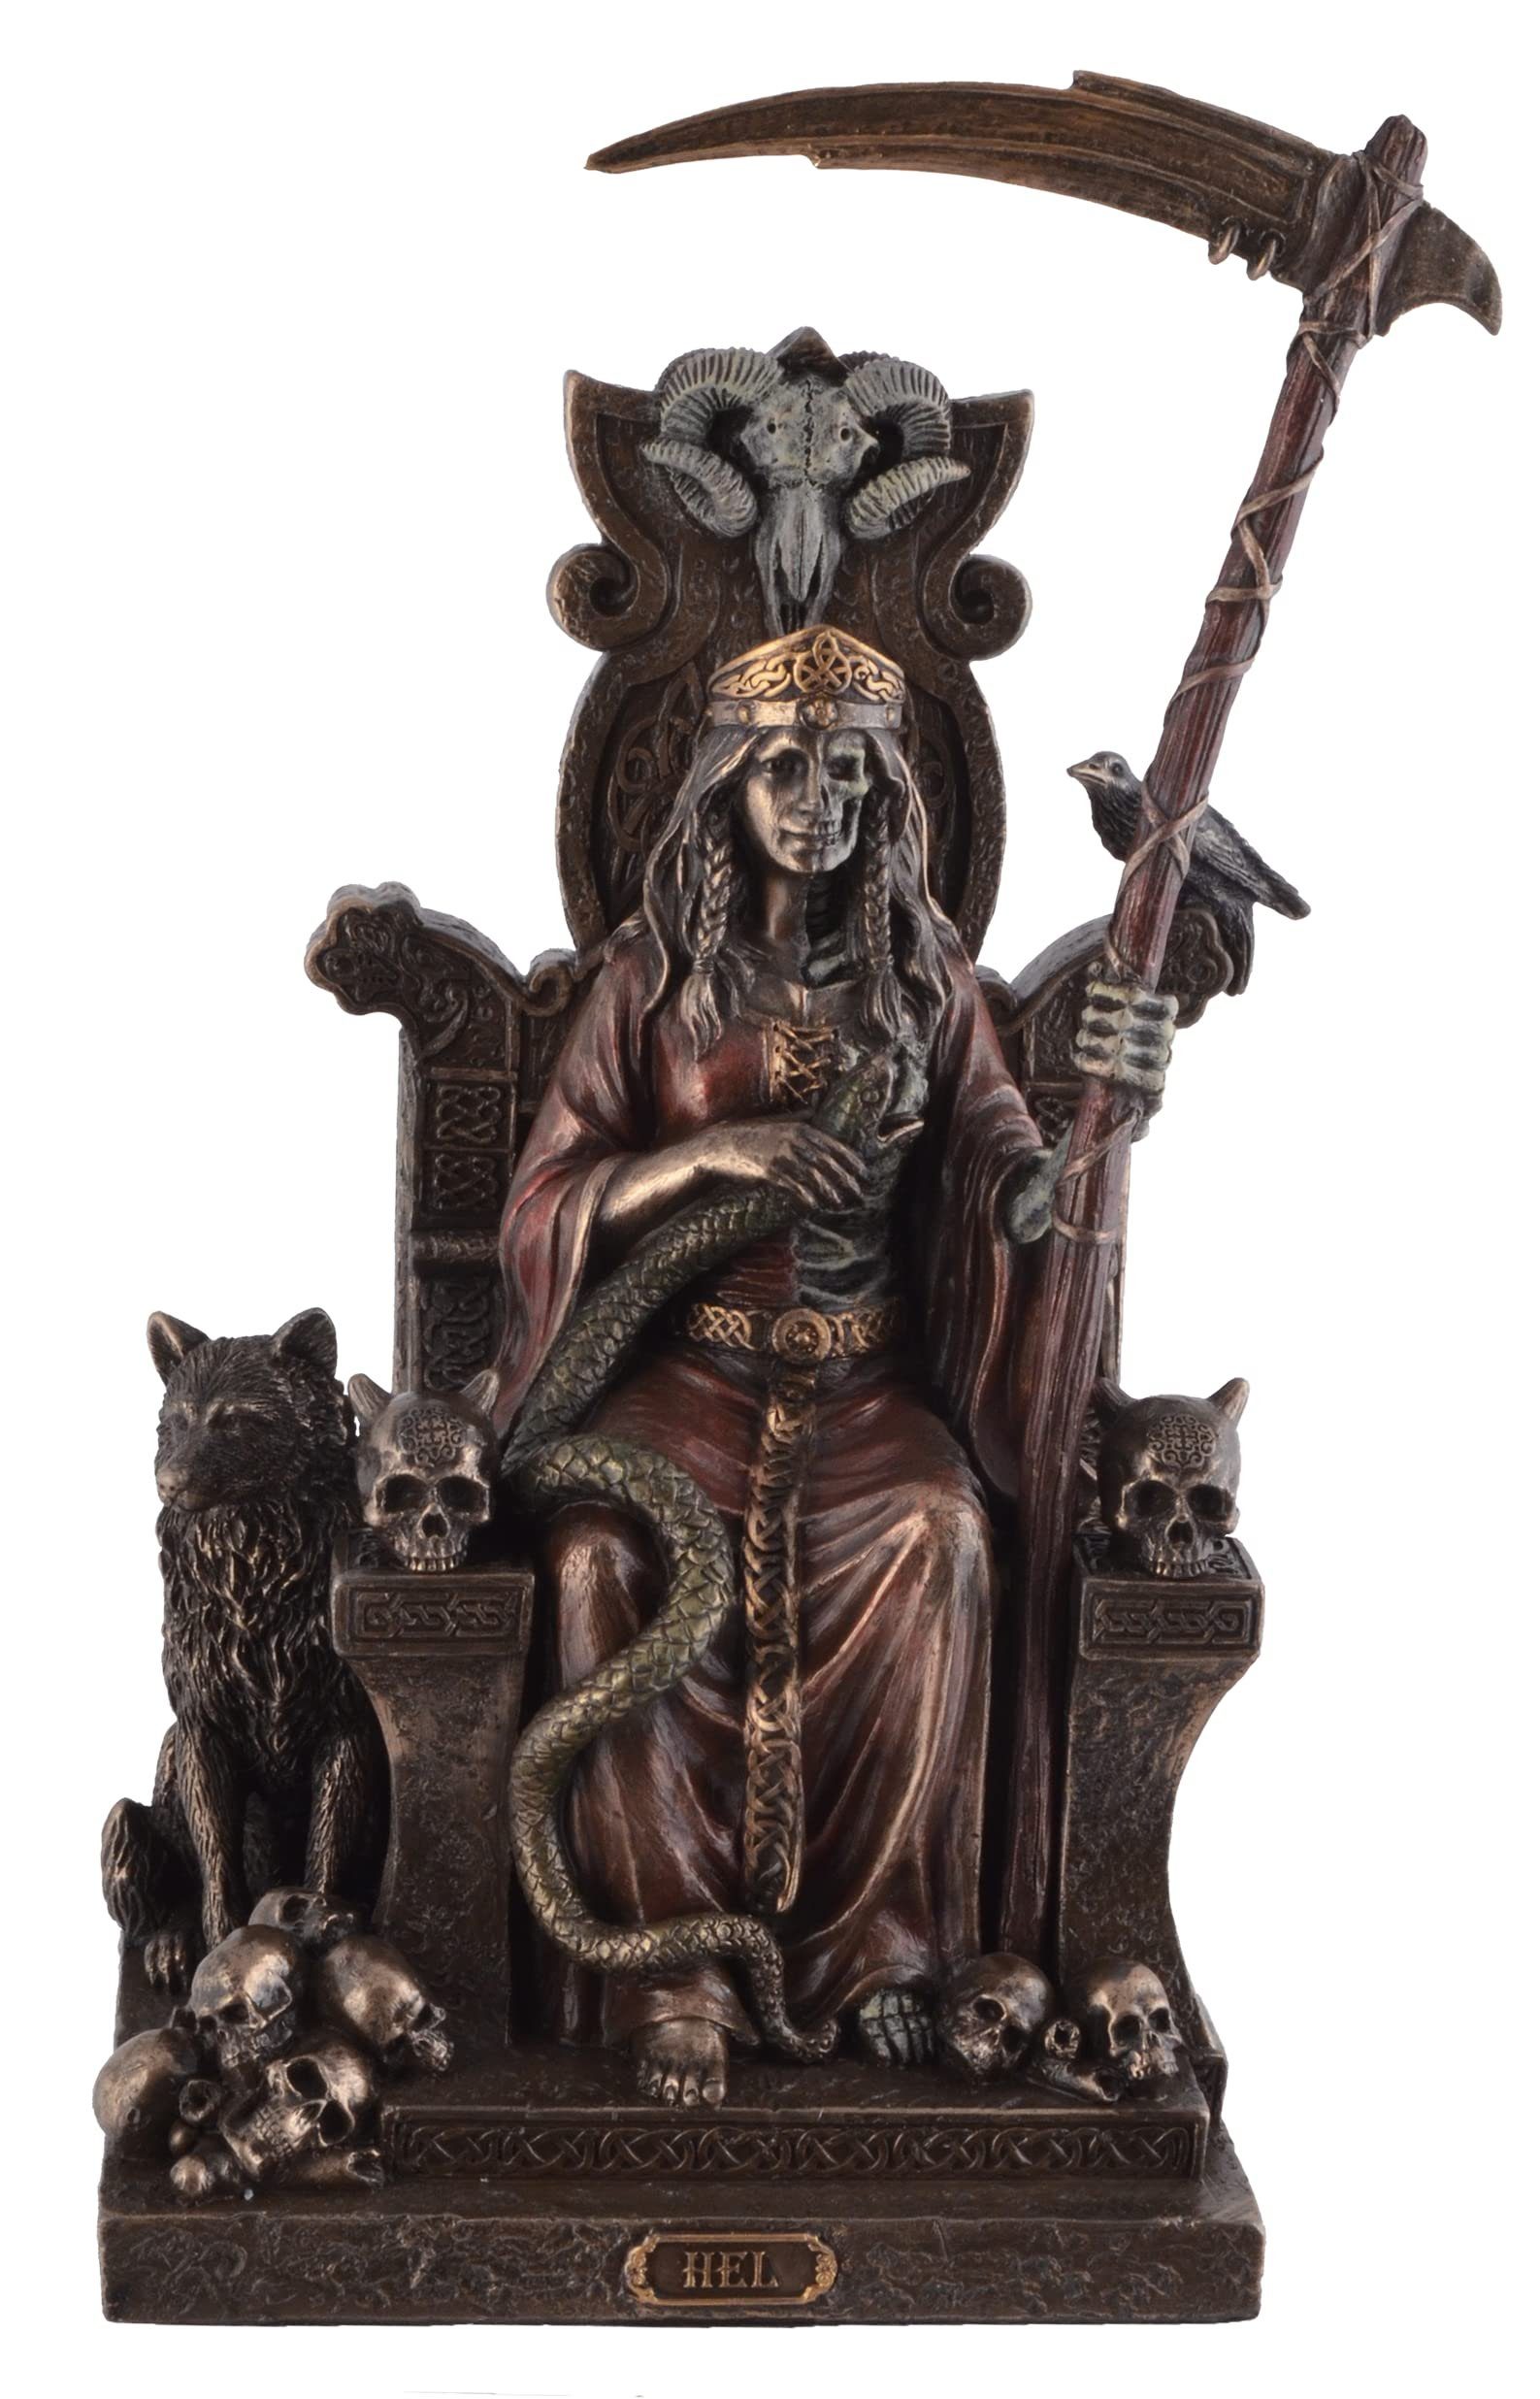 Vogler direct Gmbh Dekofigur Hel Germanische Göttin des Todes auf Thron by Veronese, von Hand bronziert und coloriert, LxBxH: ca. 15x12x23cm